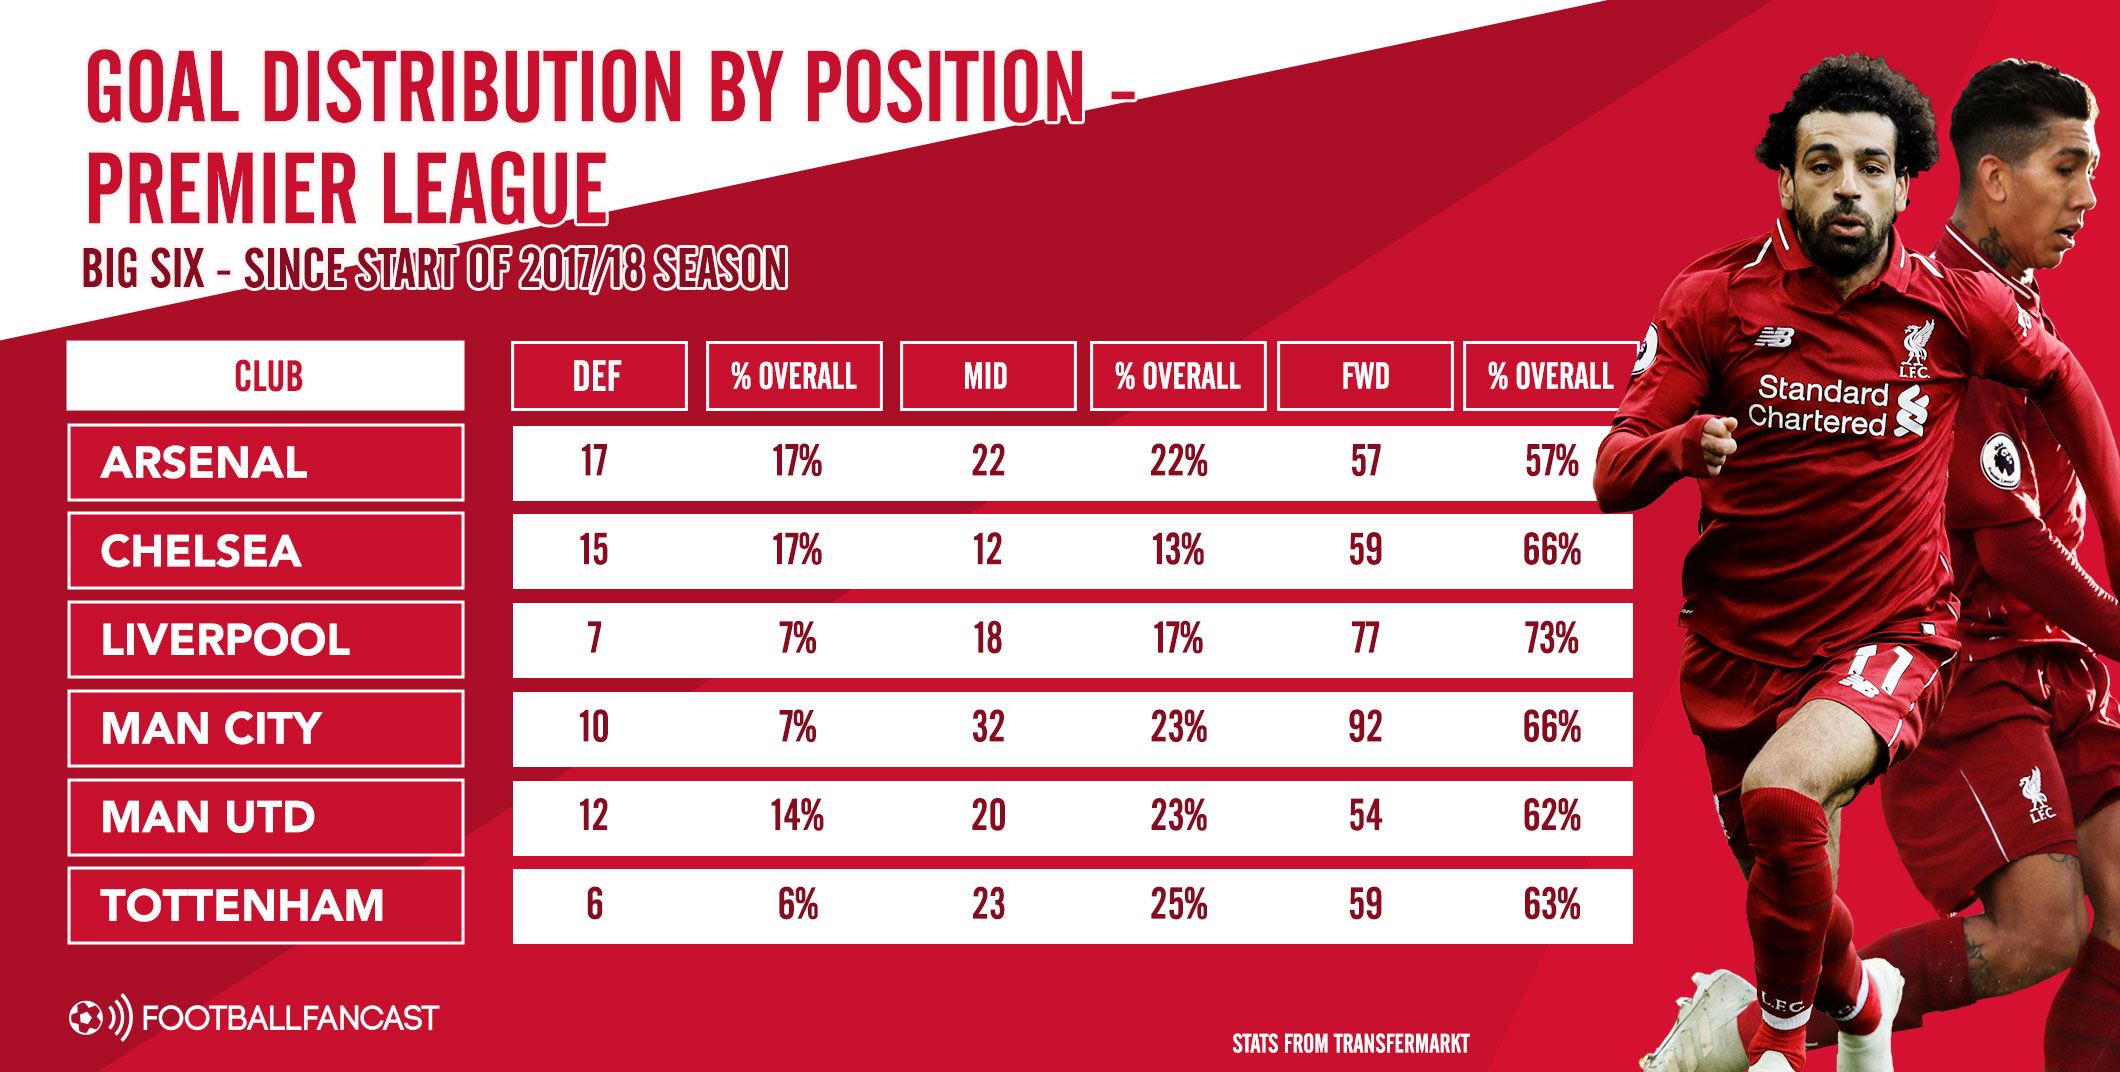 Goal Distribution by Position - Premier League